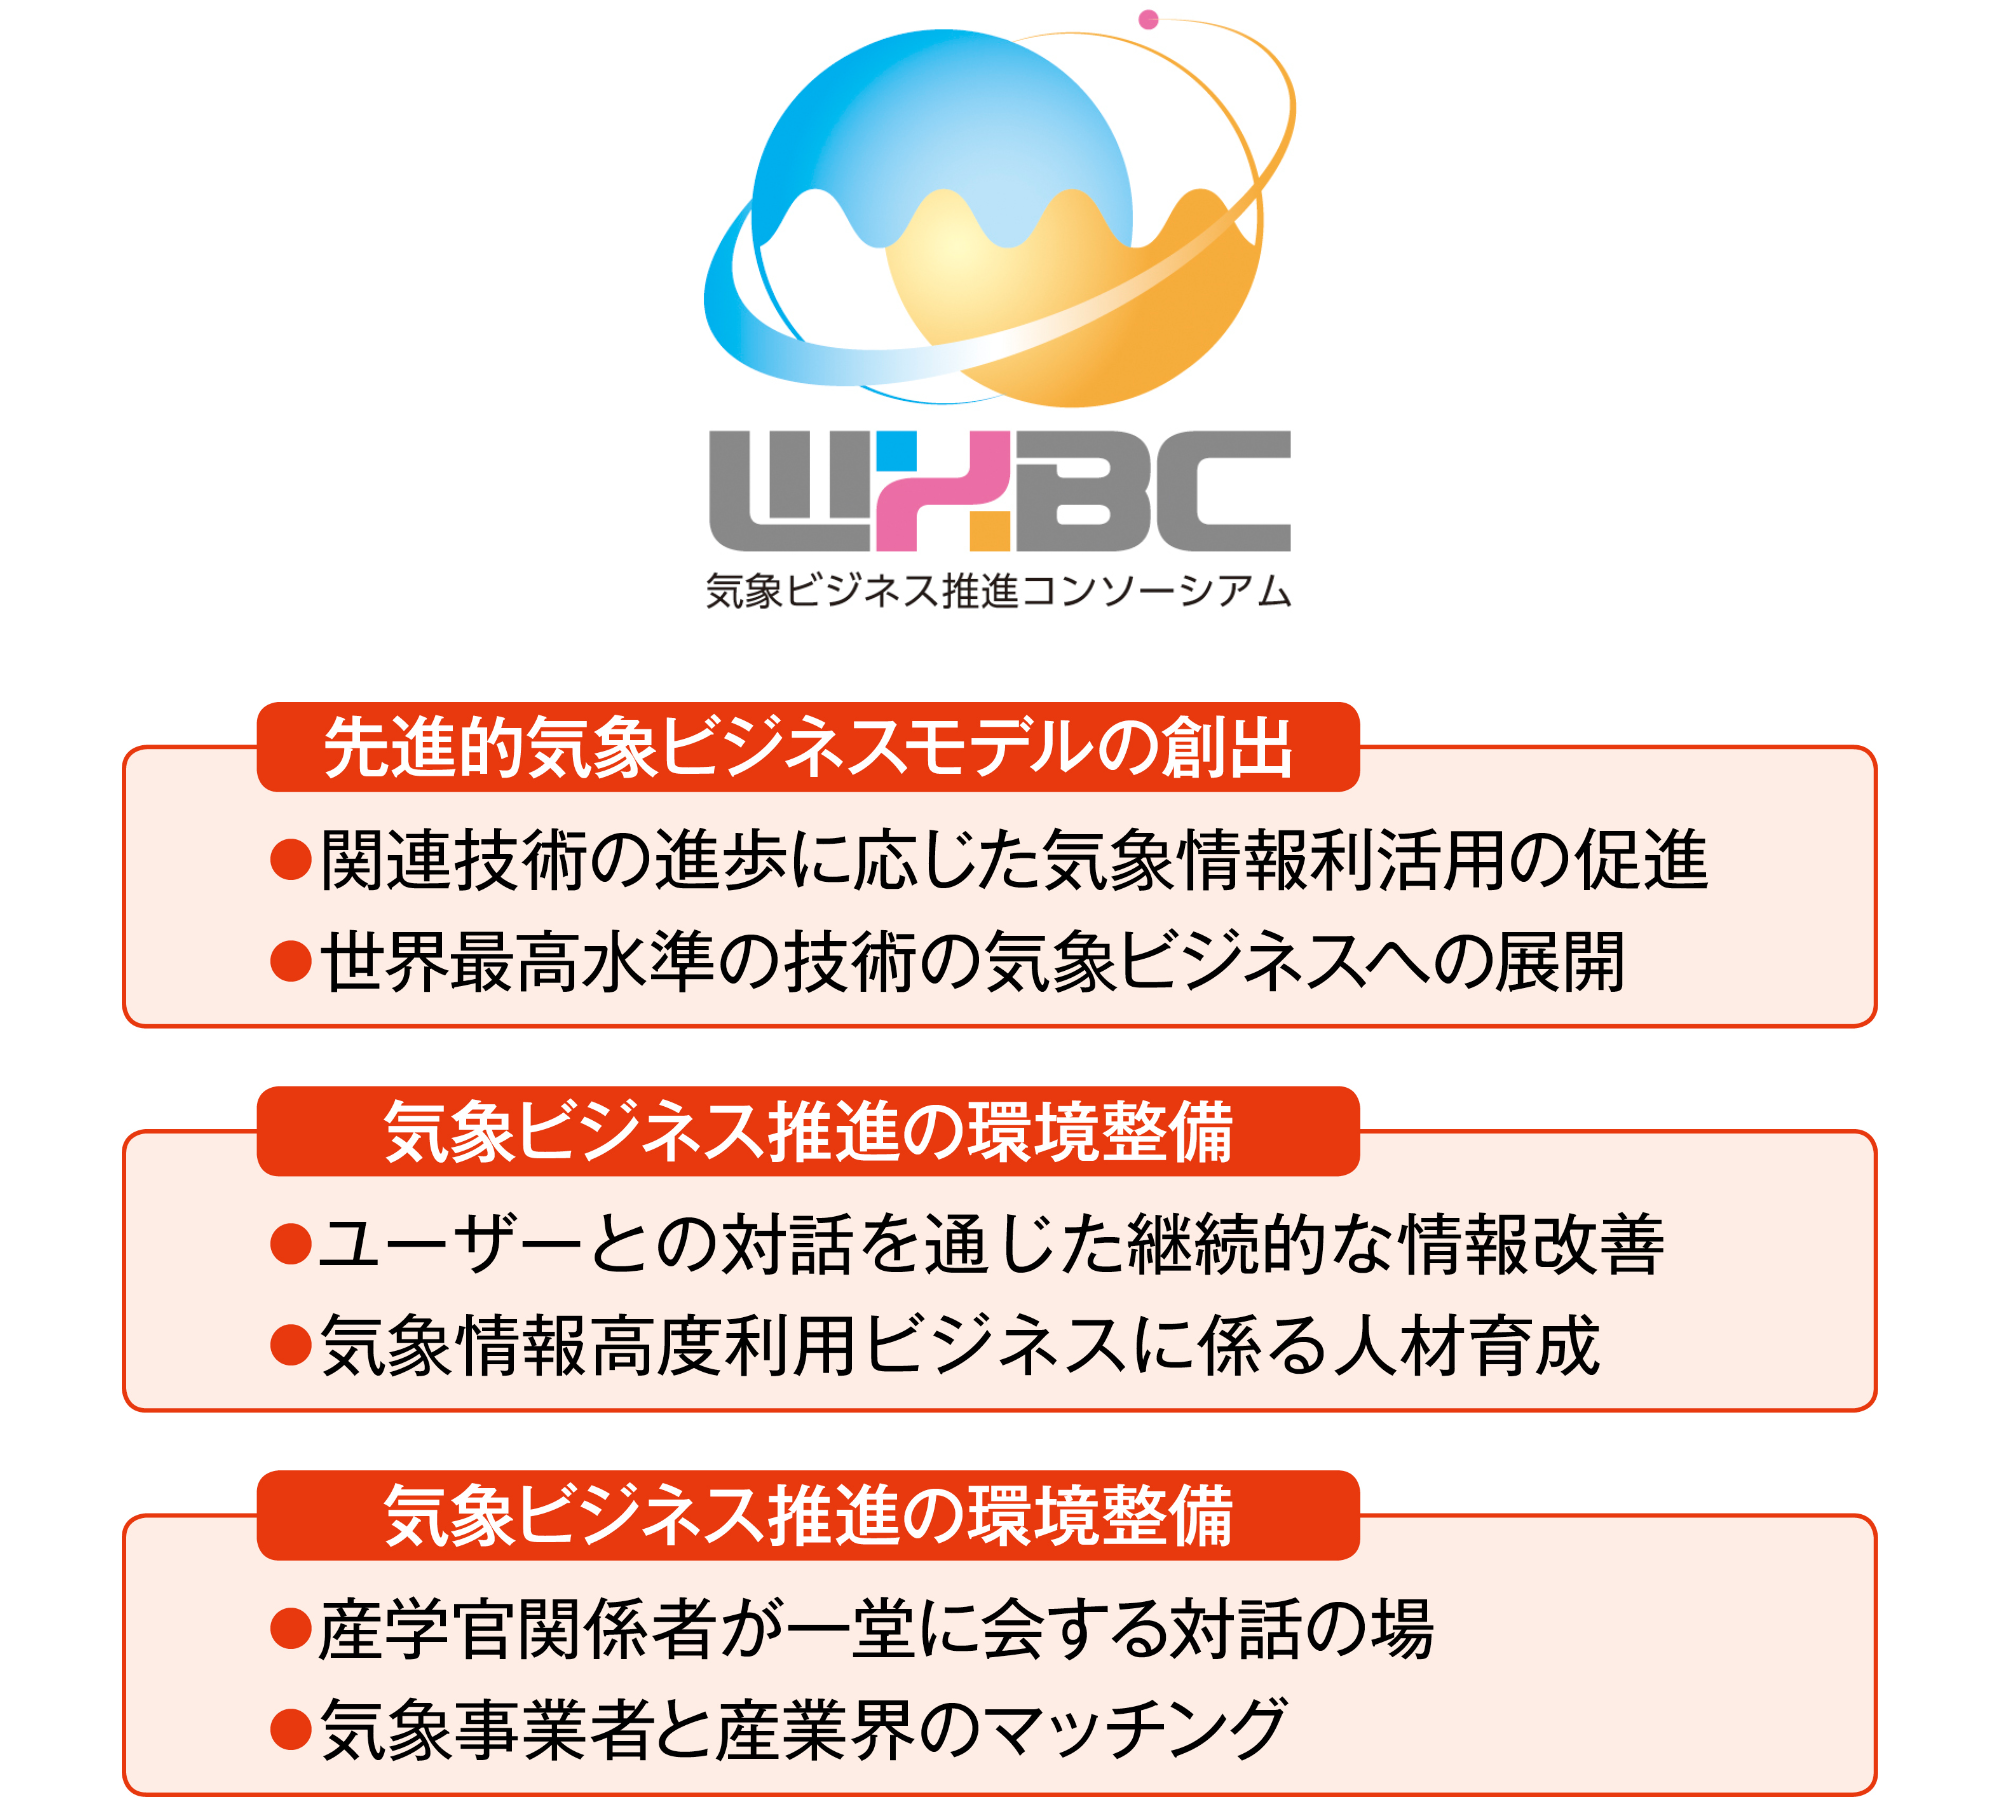 気象予報士の全国組織 | 一般社団法人 日本気象予報士会